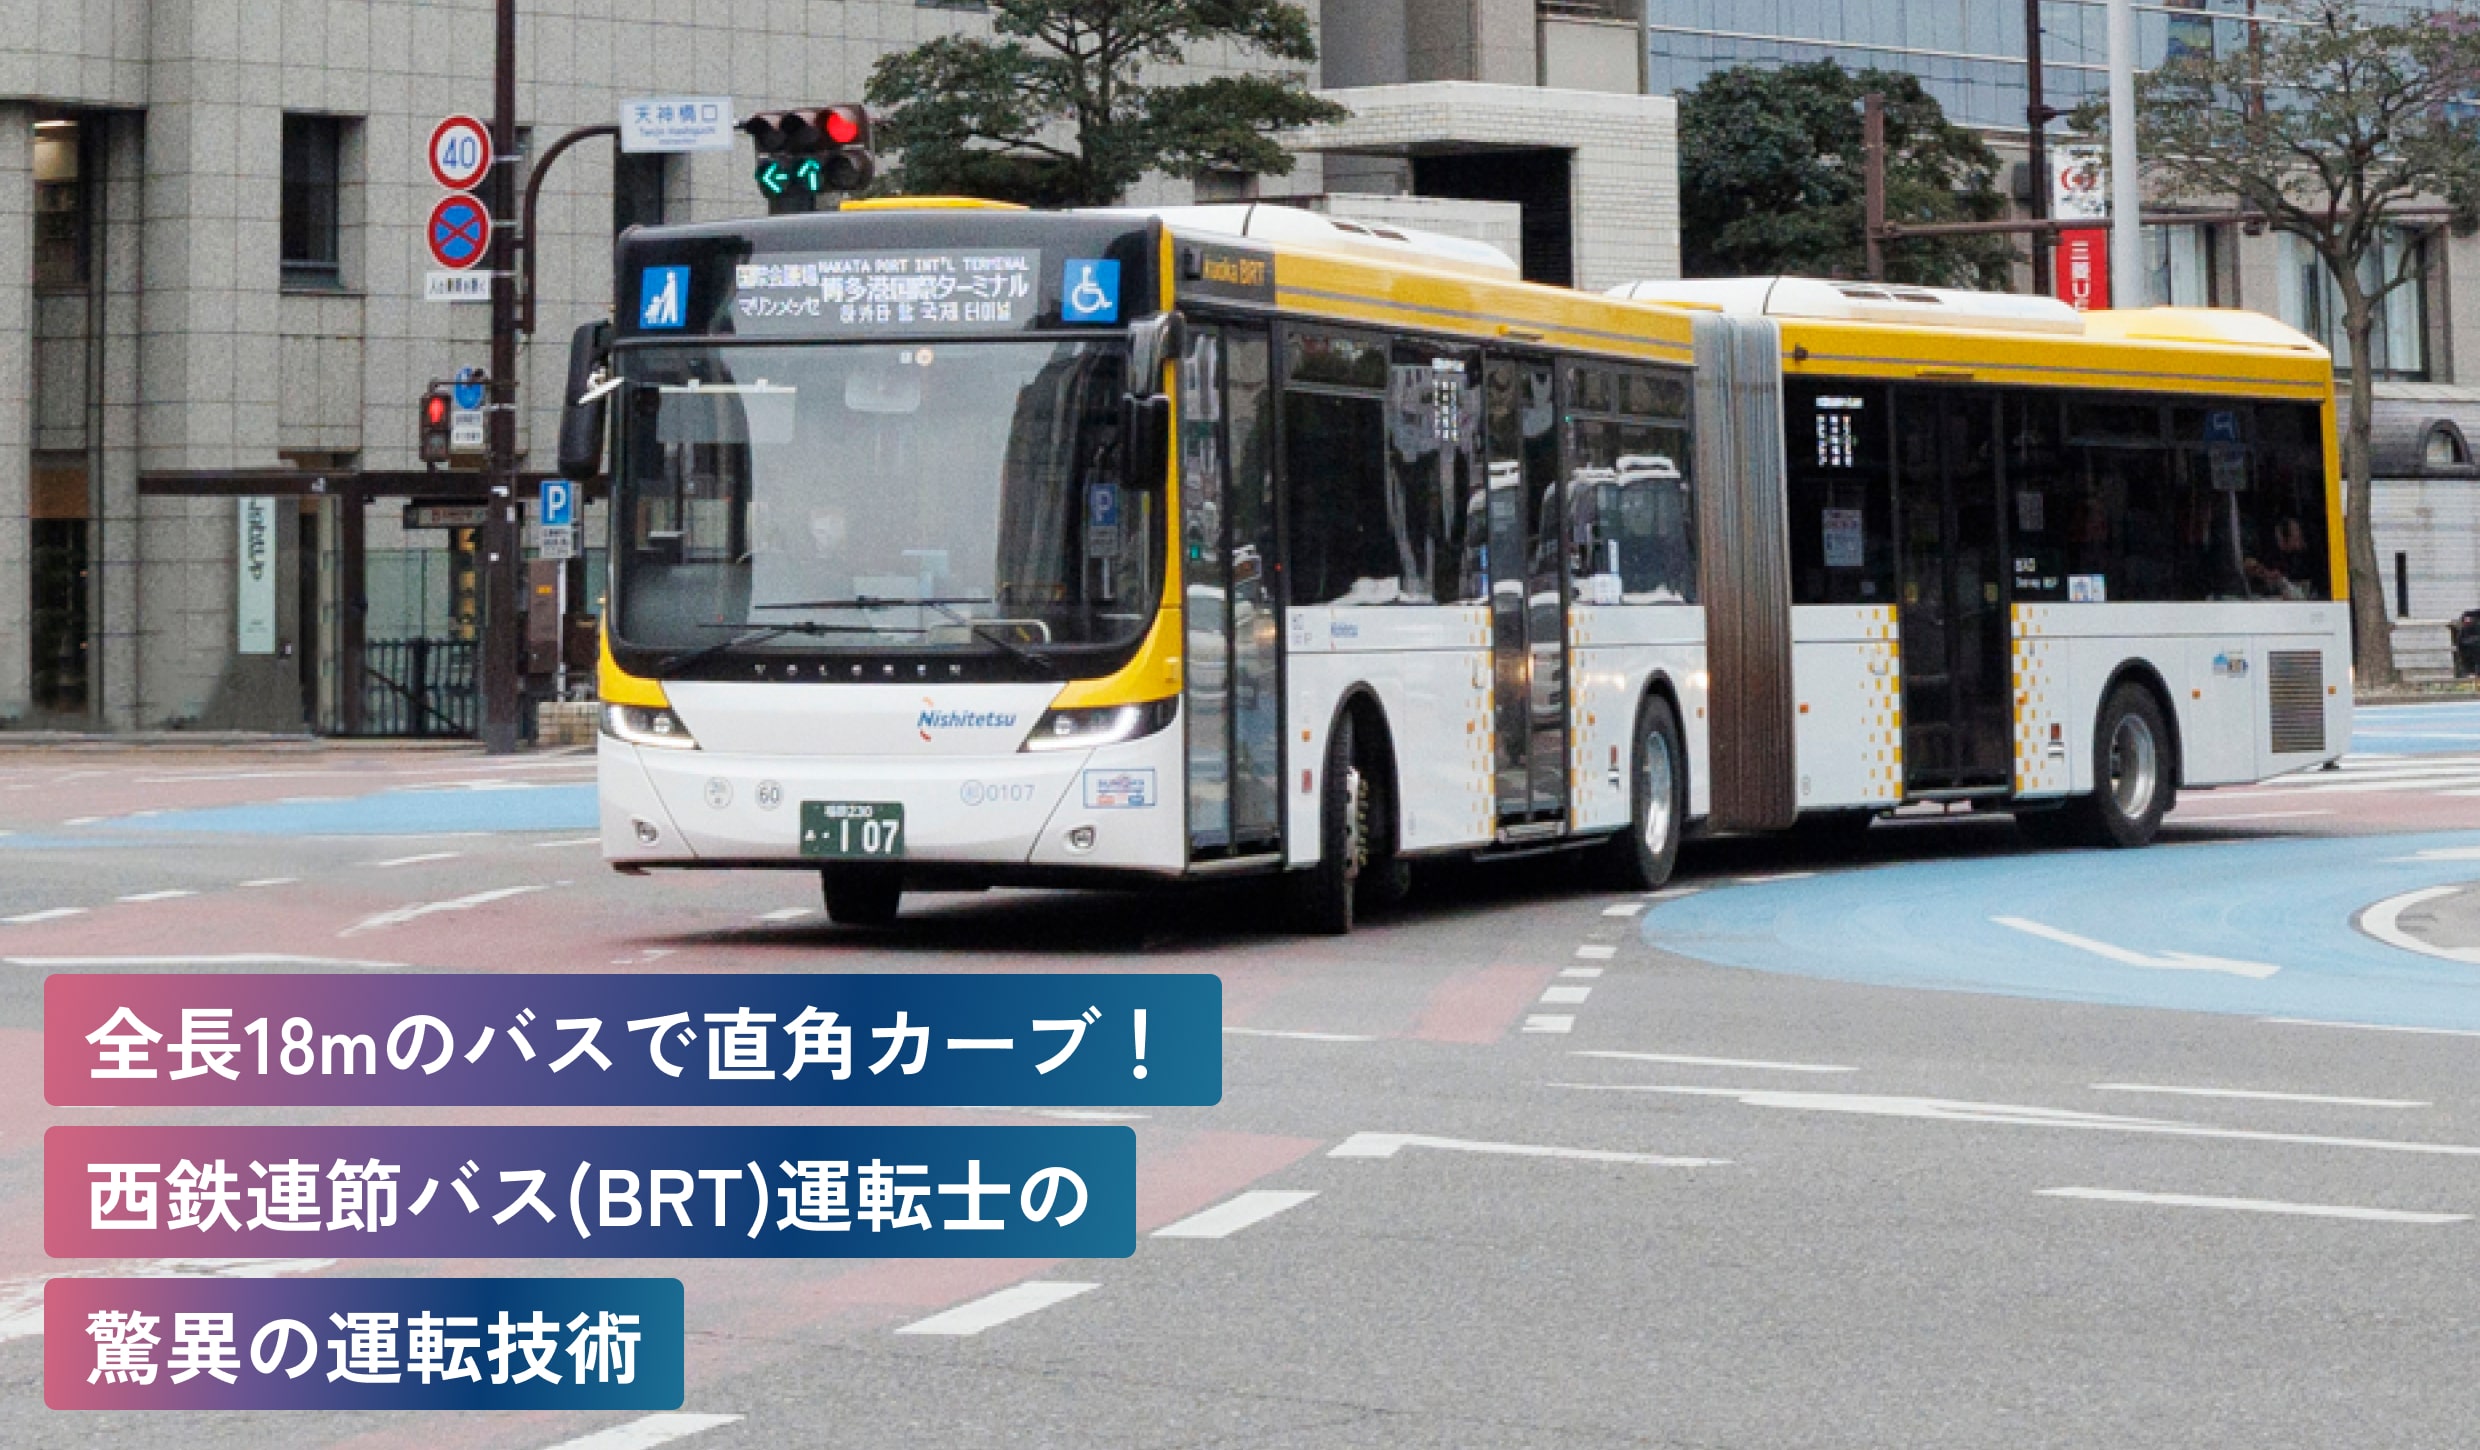 全長18mのバスで直角カーブ！
西鉄連節バス（BRT）運転士の
驚異の運転技術